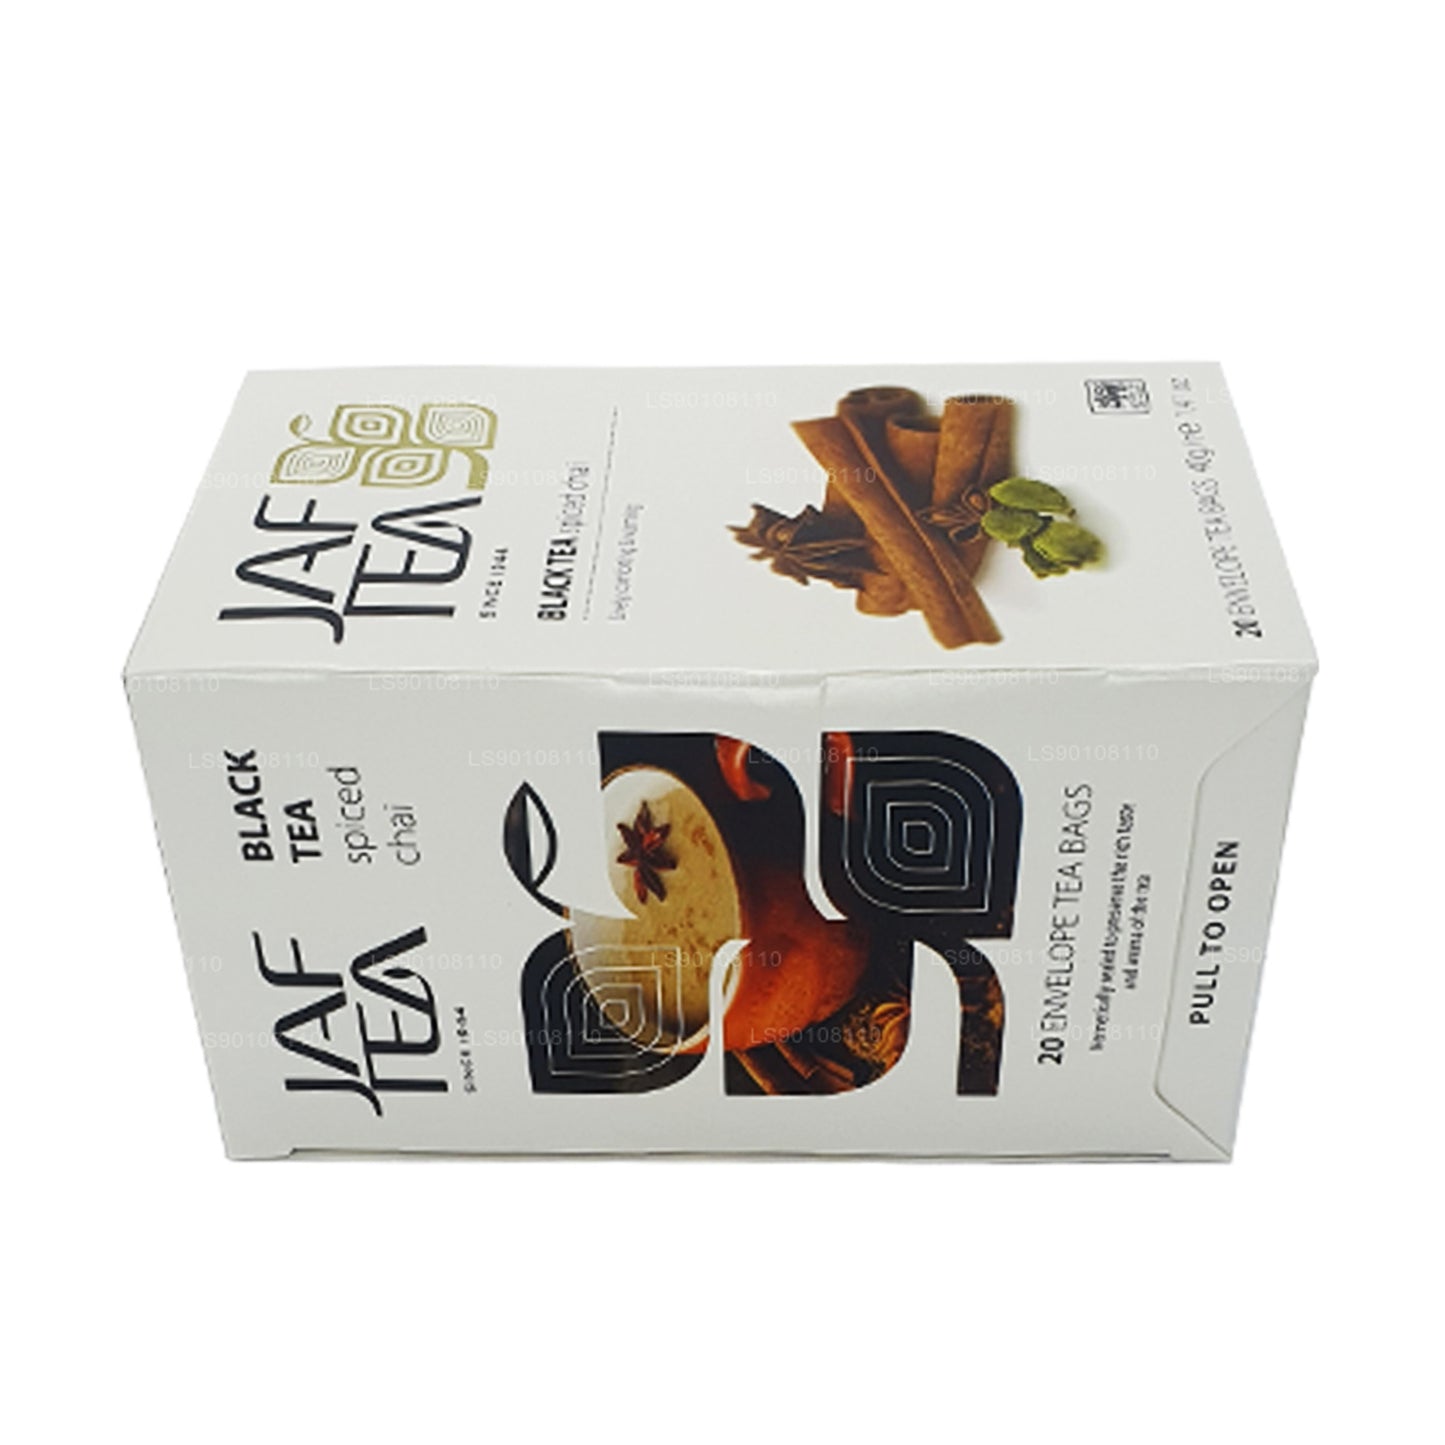 Jaf Tea Pure Spice Collection Chai speziato al tè nero (40 g) 20 bustine di tè